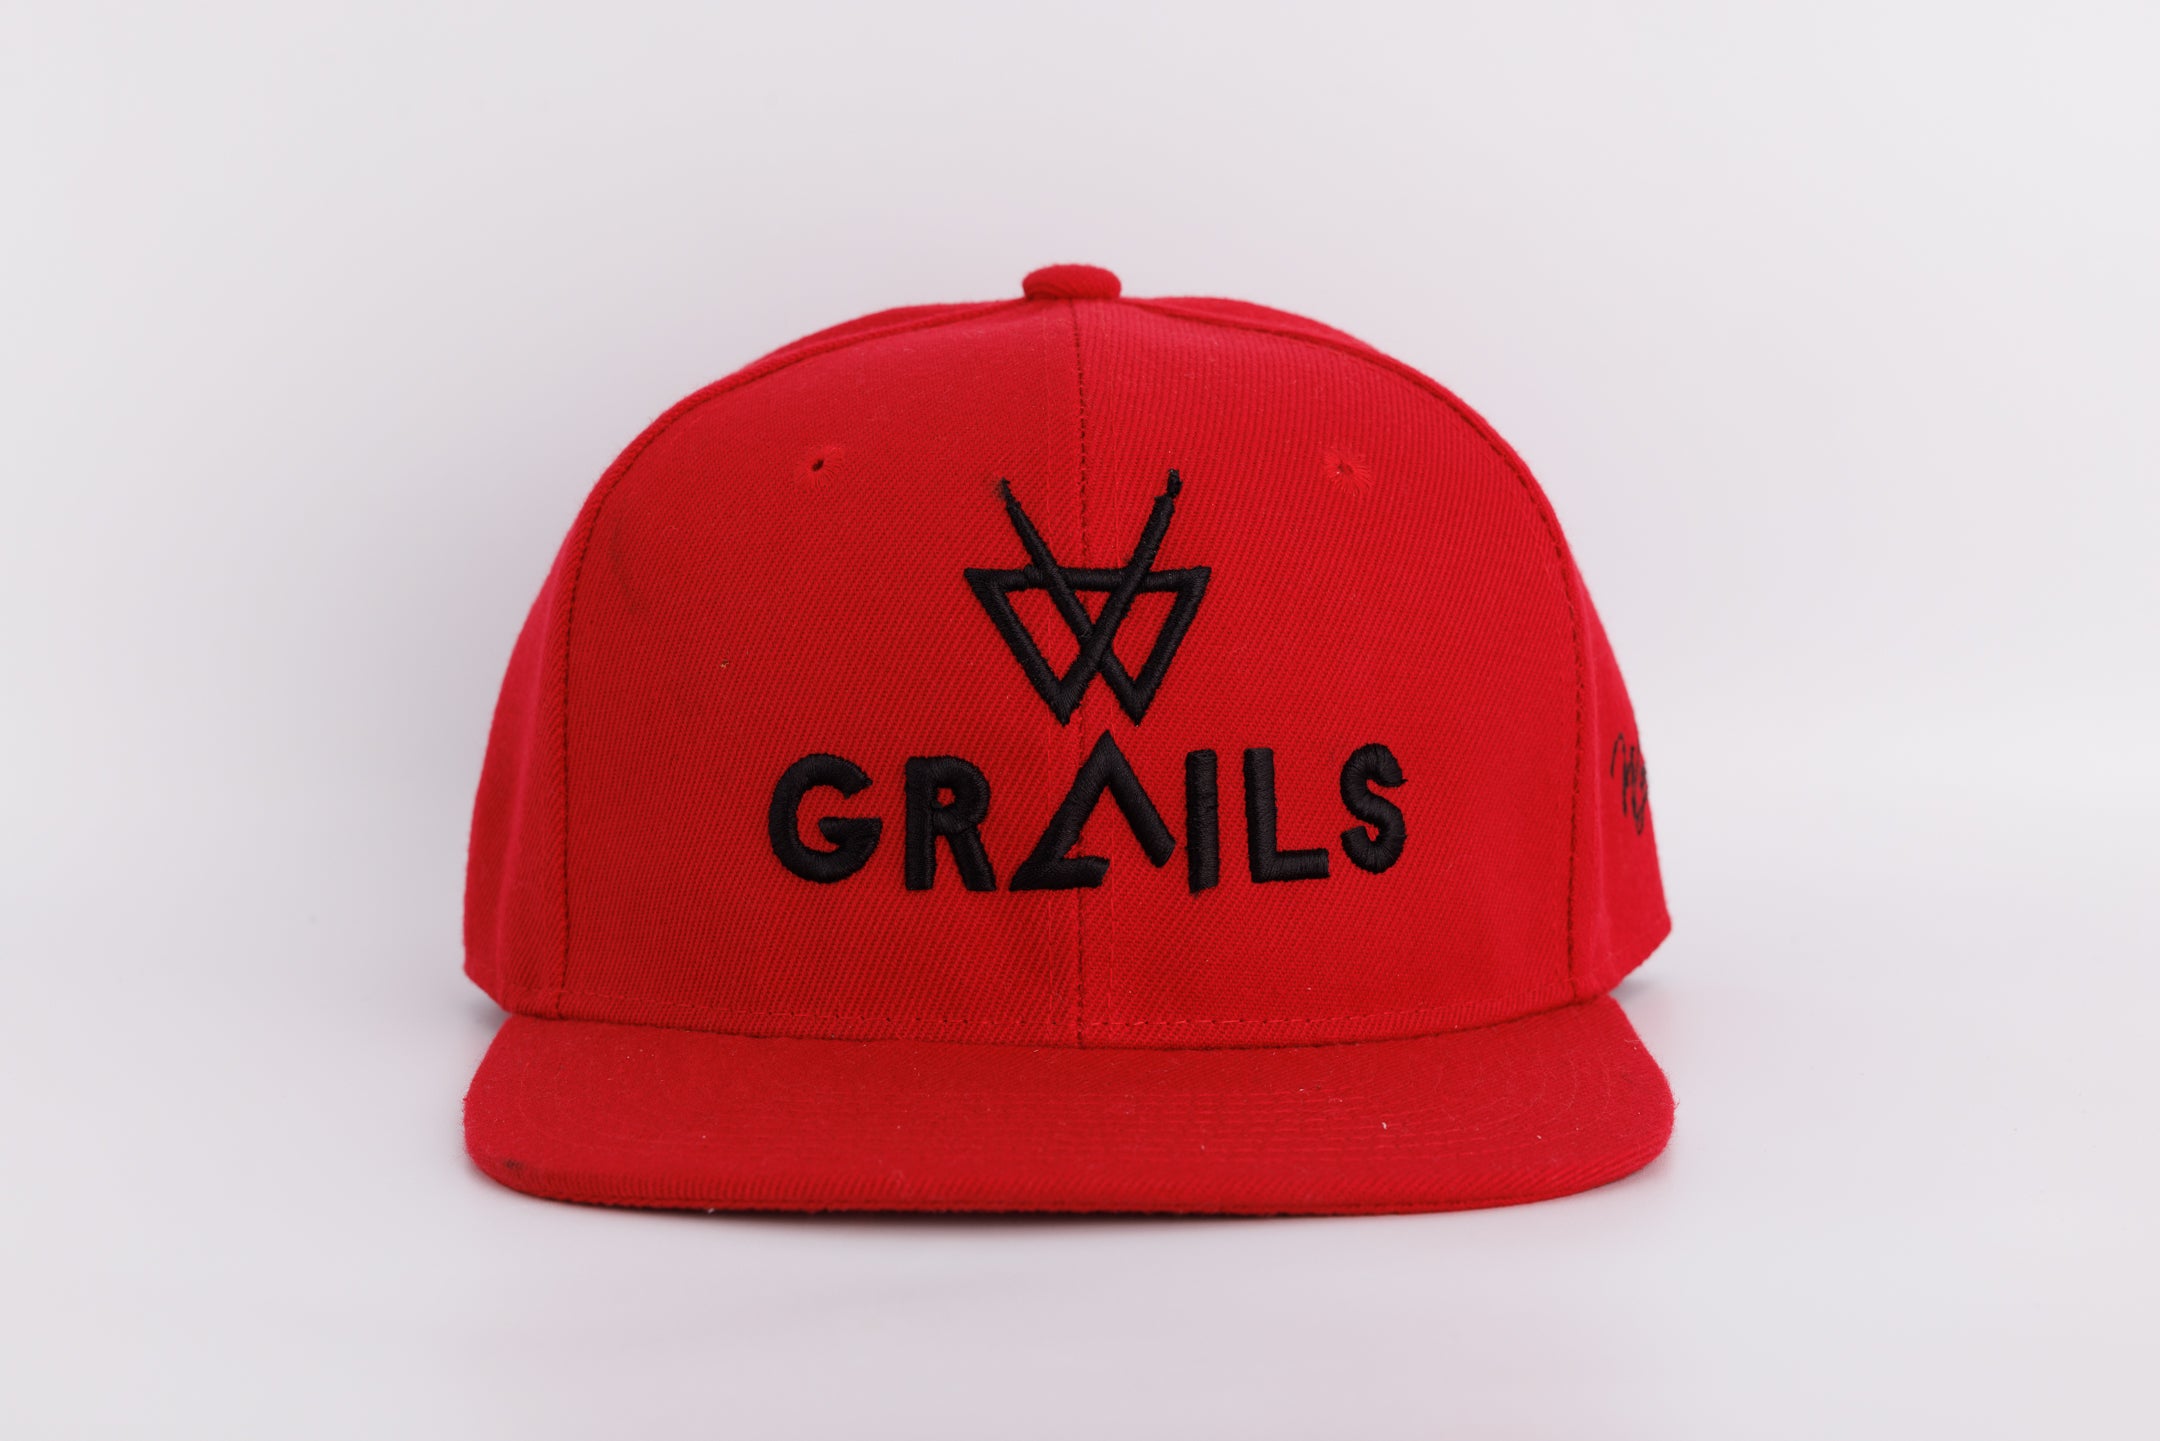 Grails Snapback - Red & Black